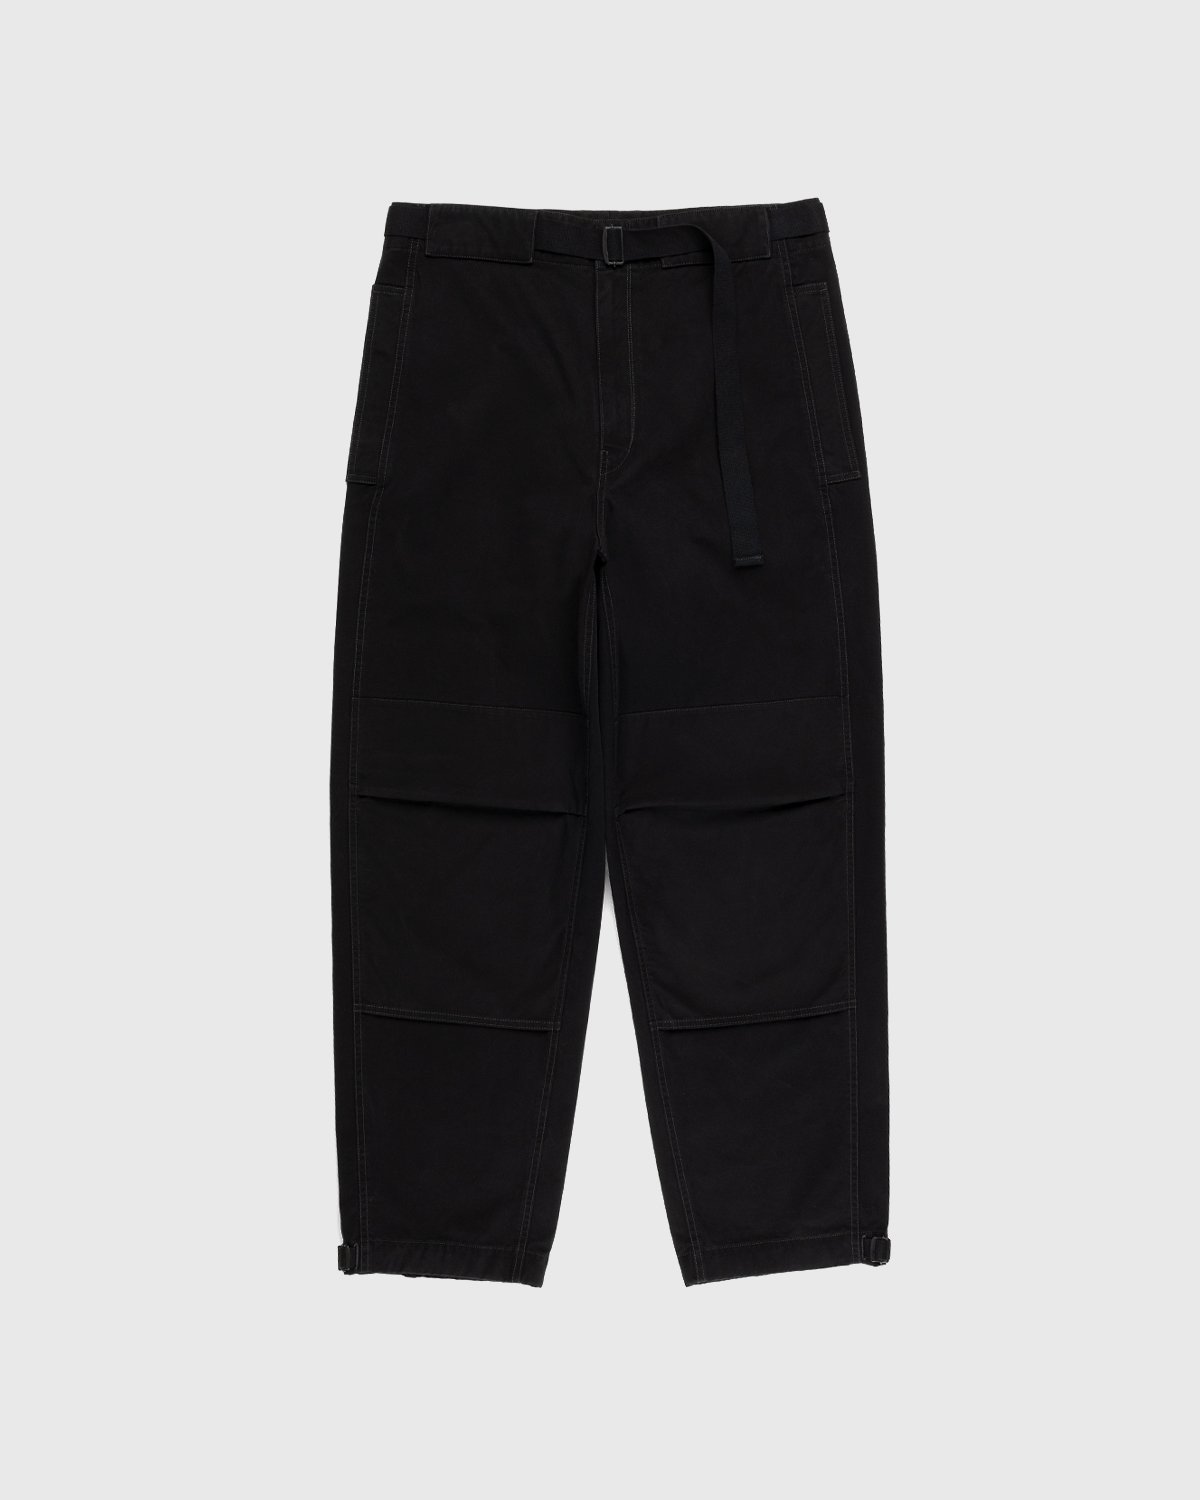 Lemaire - Utility Pants Black - Clothing - Black - Image 1